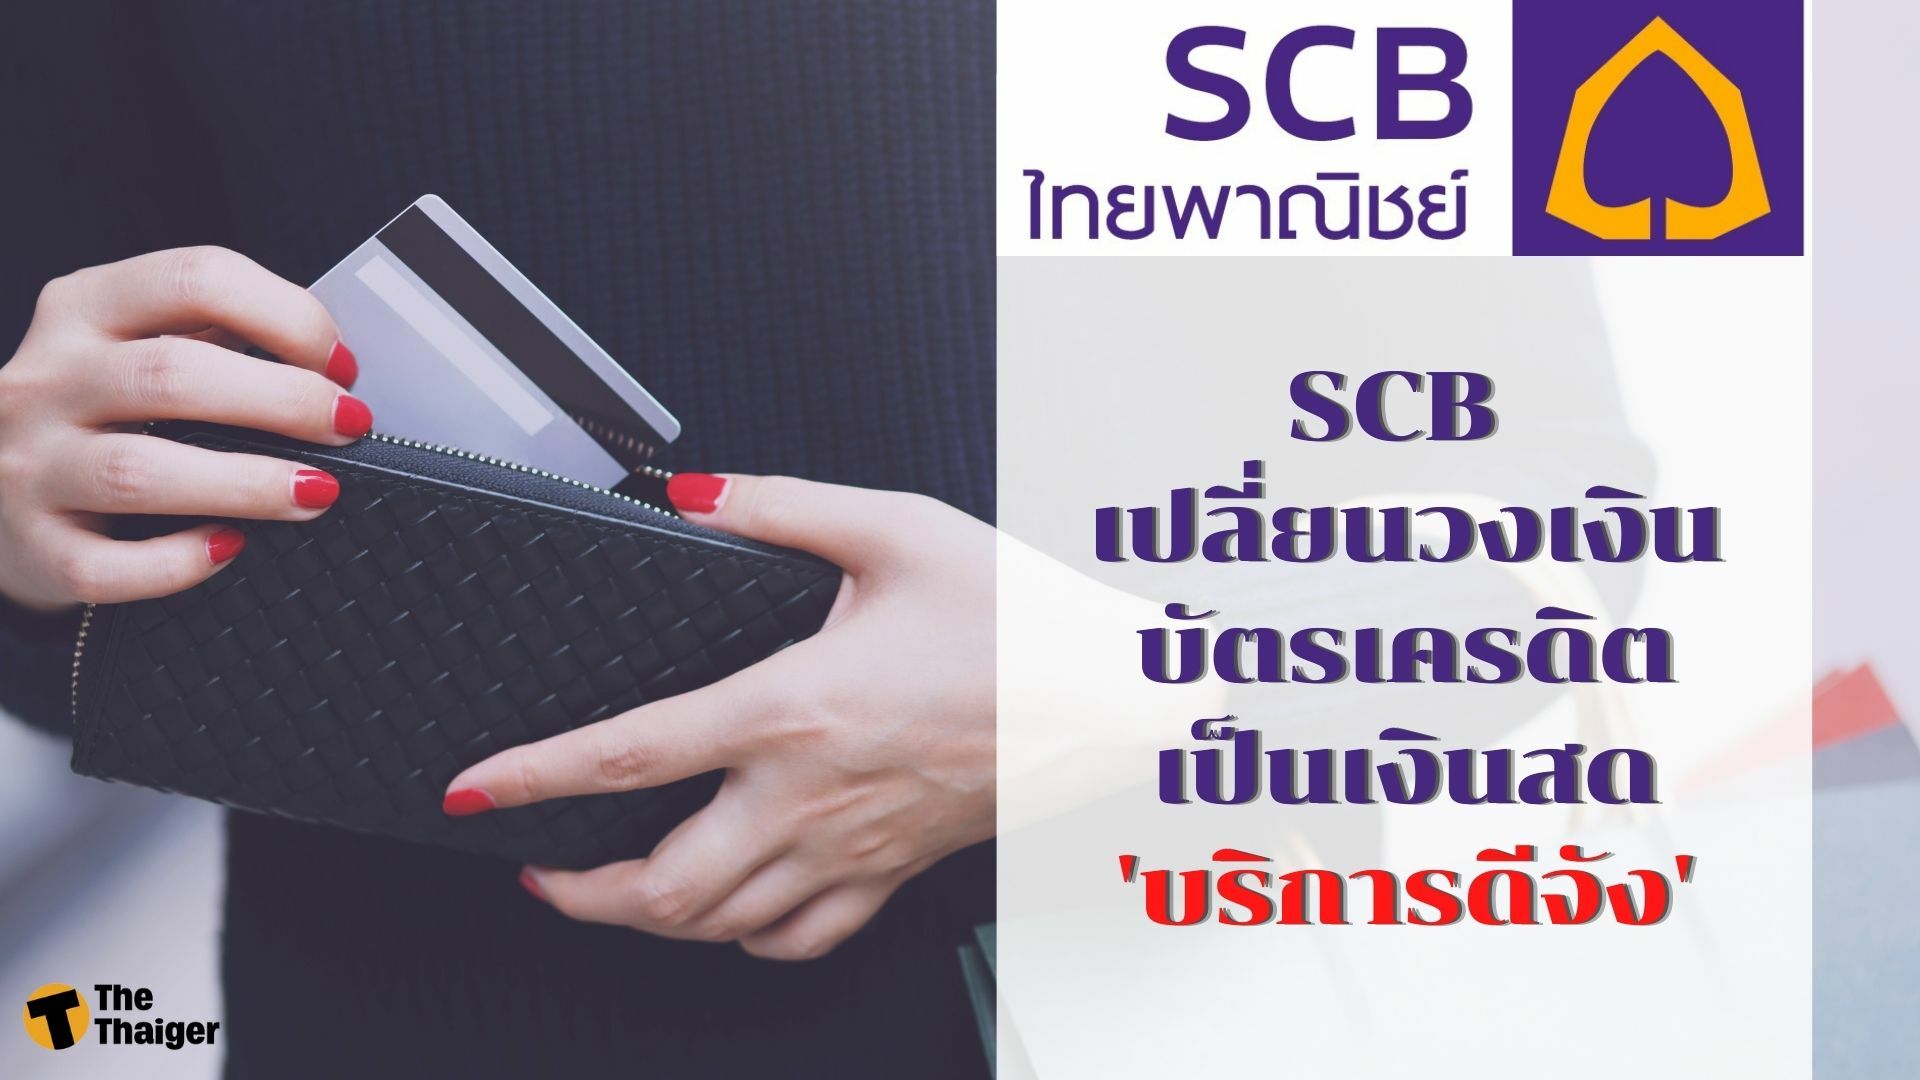 Scb เปลี่ยนวงเงินบัตรเครดิตเป็นเงินสด 'บริการดีจัง' ดอกเบี้ยเพียง 0.74%  ผ่อนชำระสูงสุด 36 เดือน | Thaiger ข่าวไทย